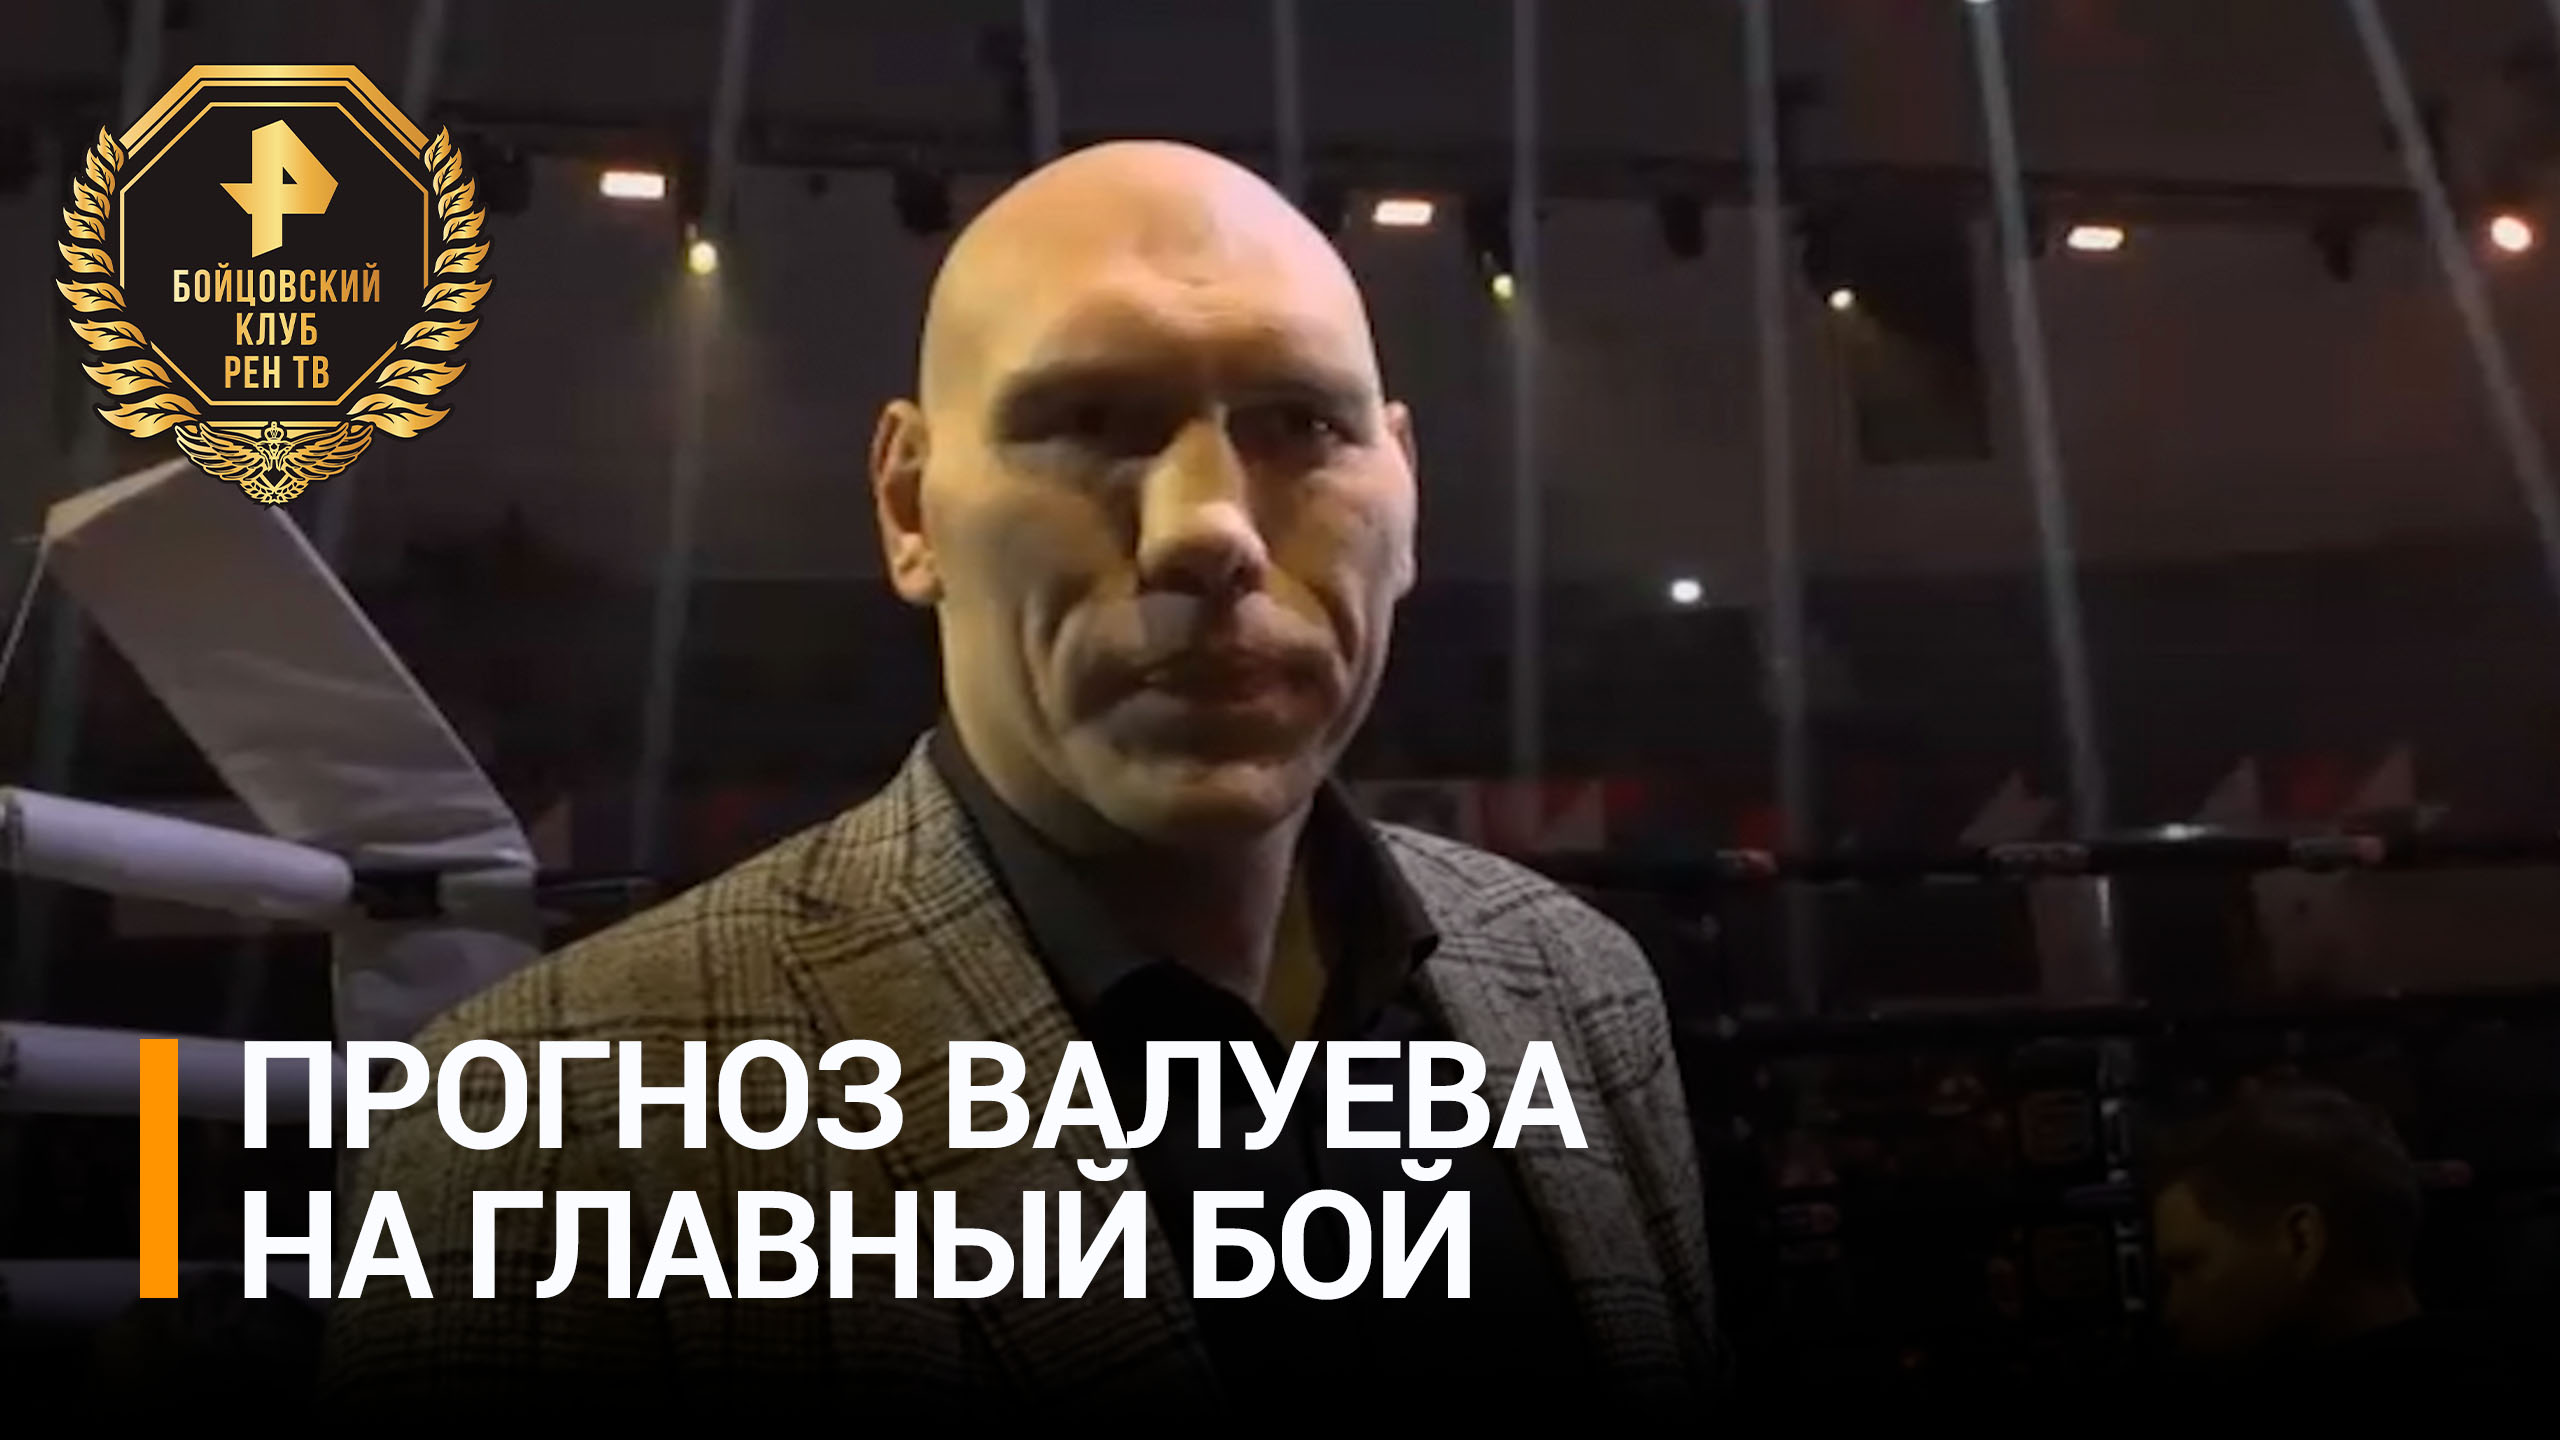 Валуев предположил, кто одержит победу в главном бою / Бойцовский клуб РЕН